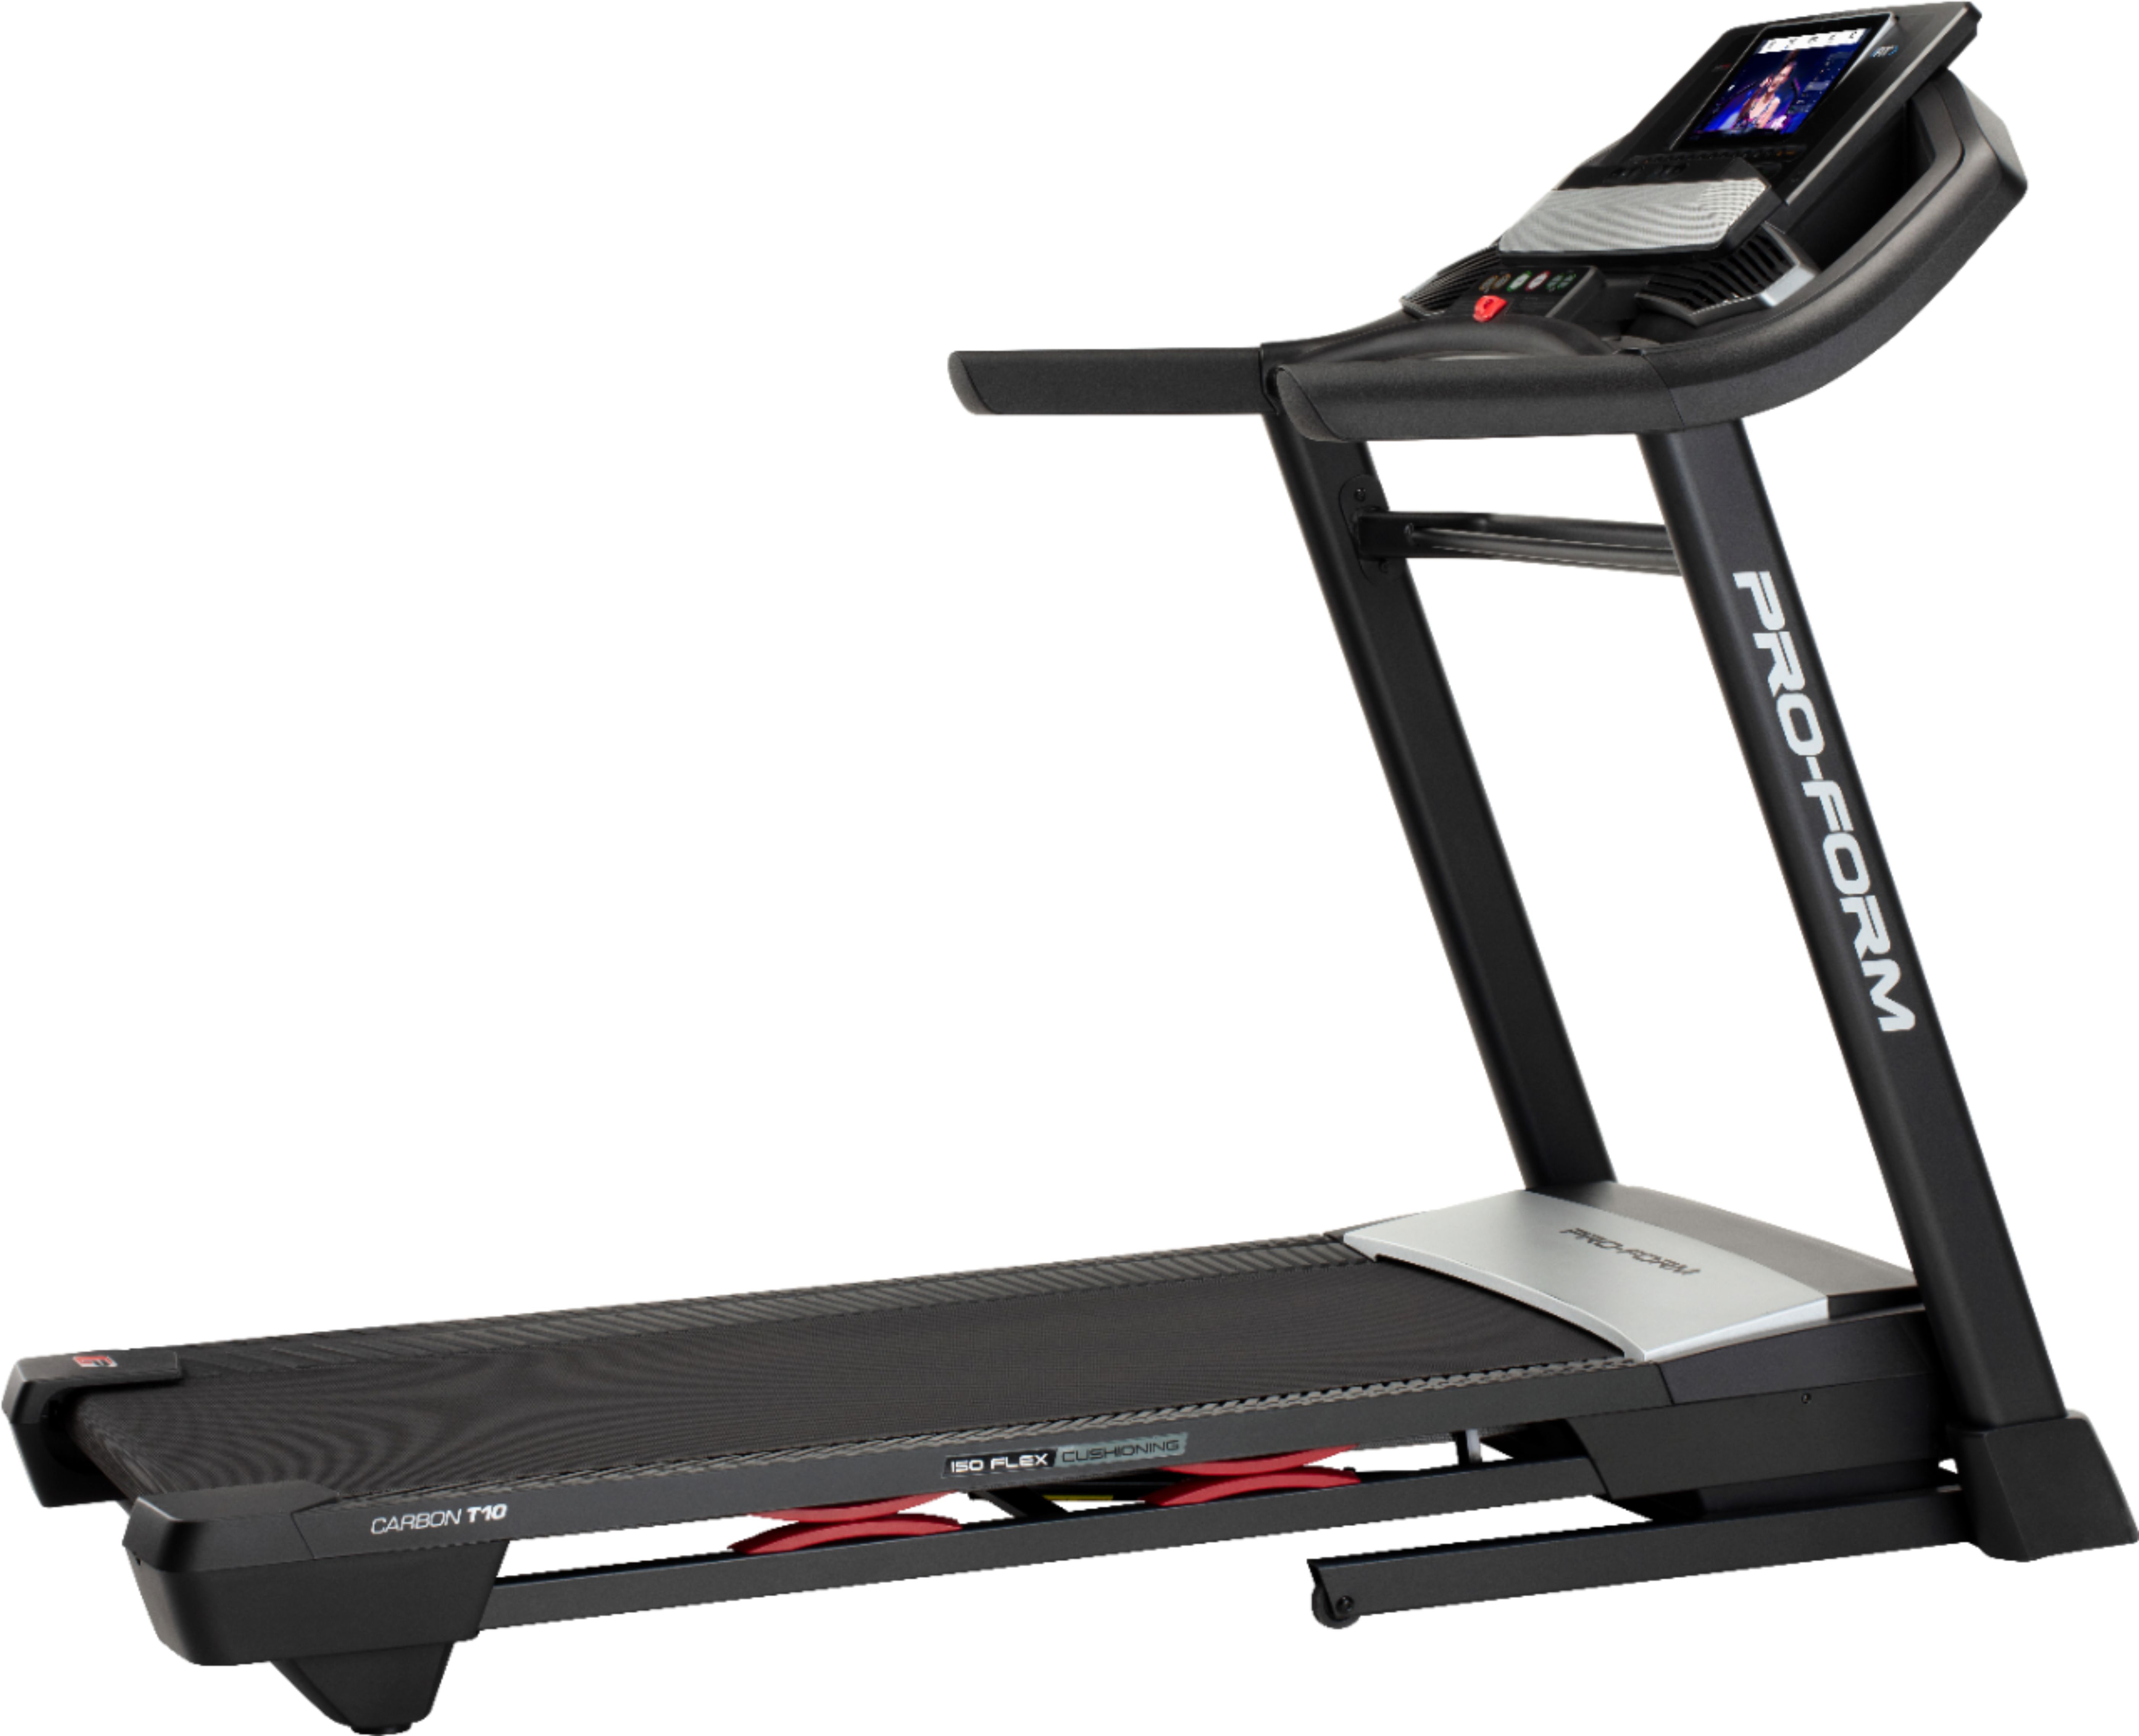 Proform Carbon T10 Treadmill Black Gray Pftl999 Best Buy